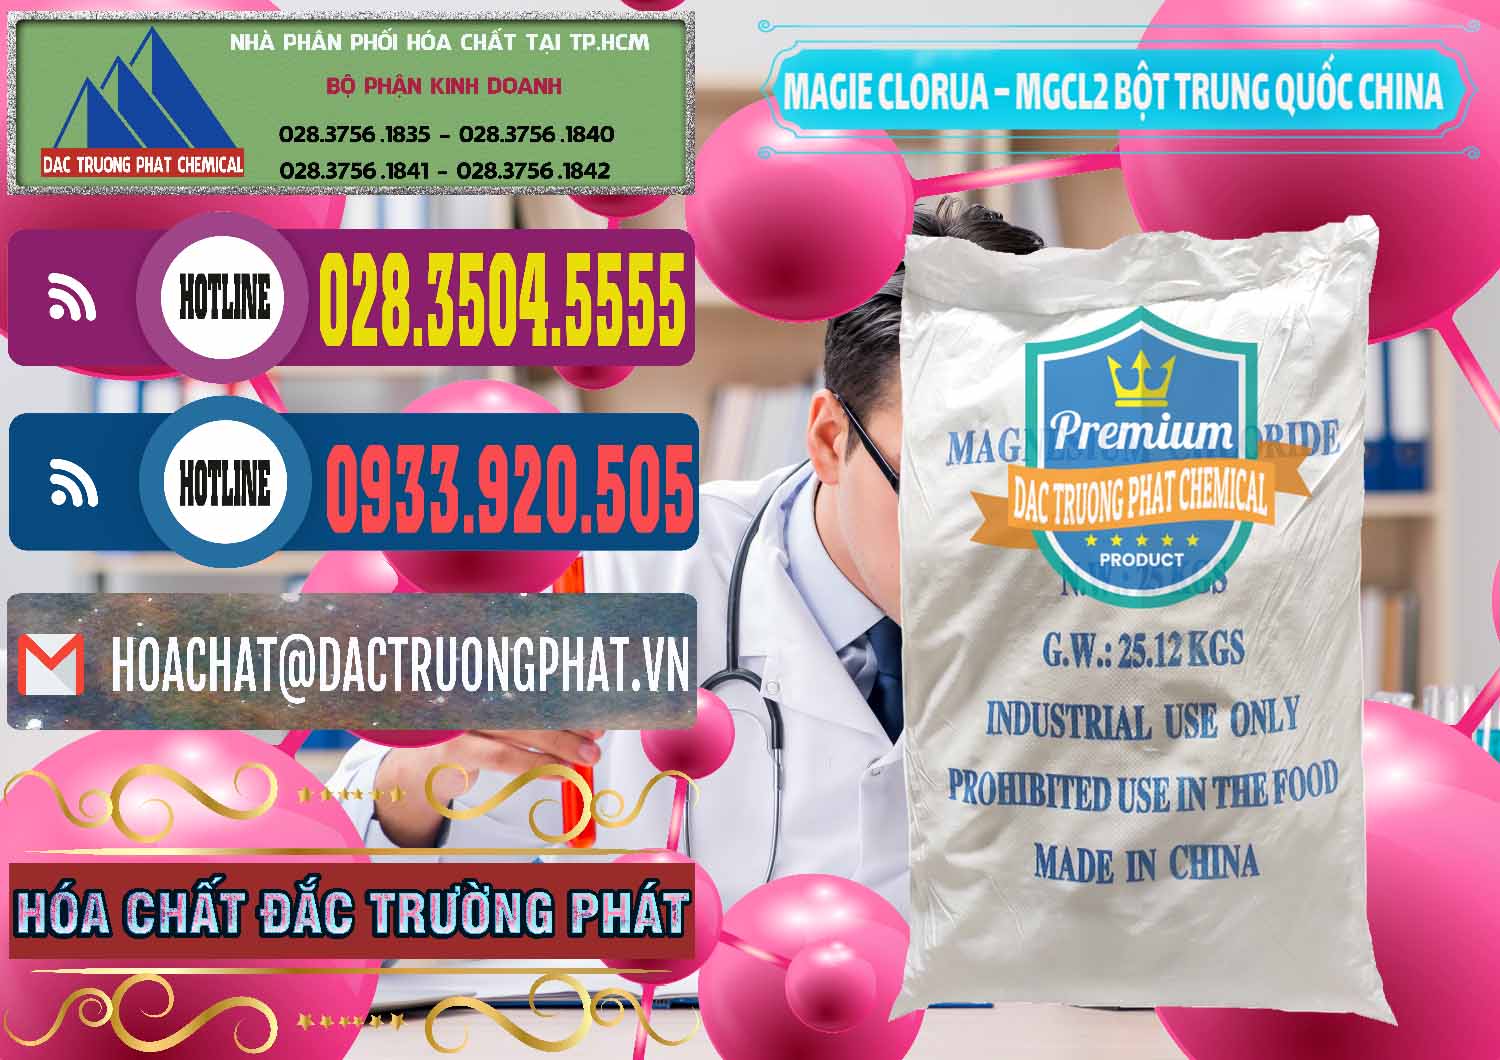 Cty chuyên bán & cung ứng Magie Clorua – MGCL2 96% Dạng Bột Bao Chữ Xanh Trung Quốc China - 0207 - Nơi cung cấp - bán hóa chất tại TP.HCM - muabanhoachat.com.vn